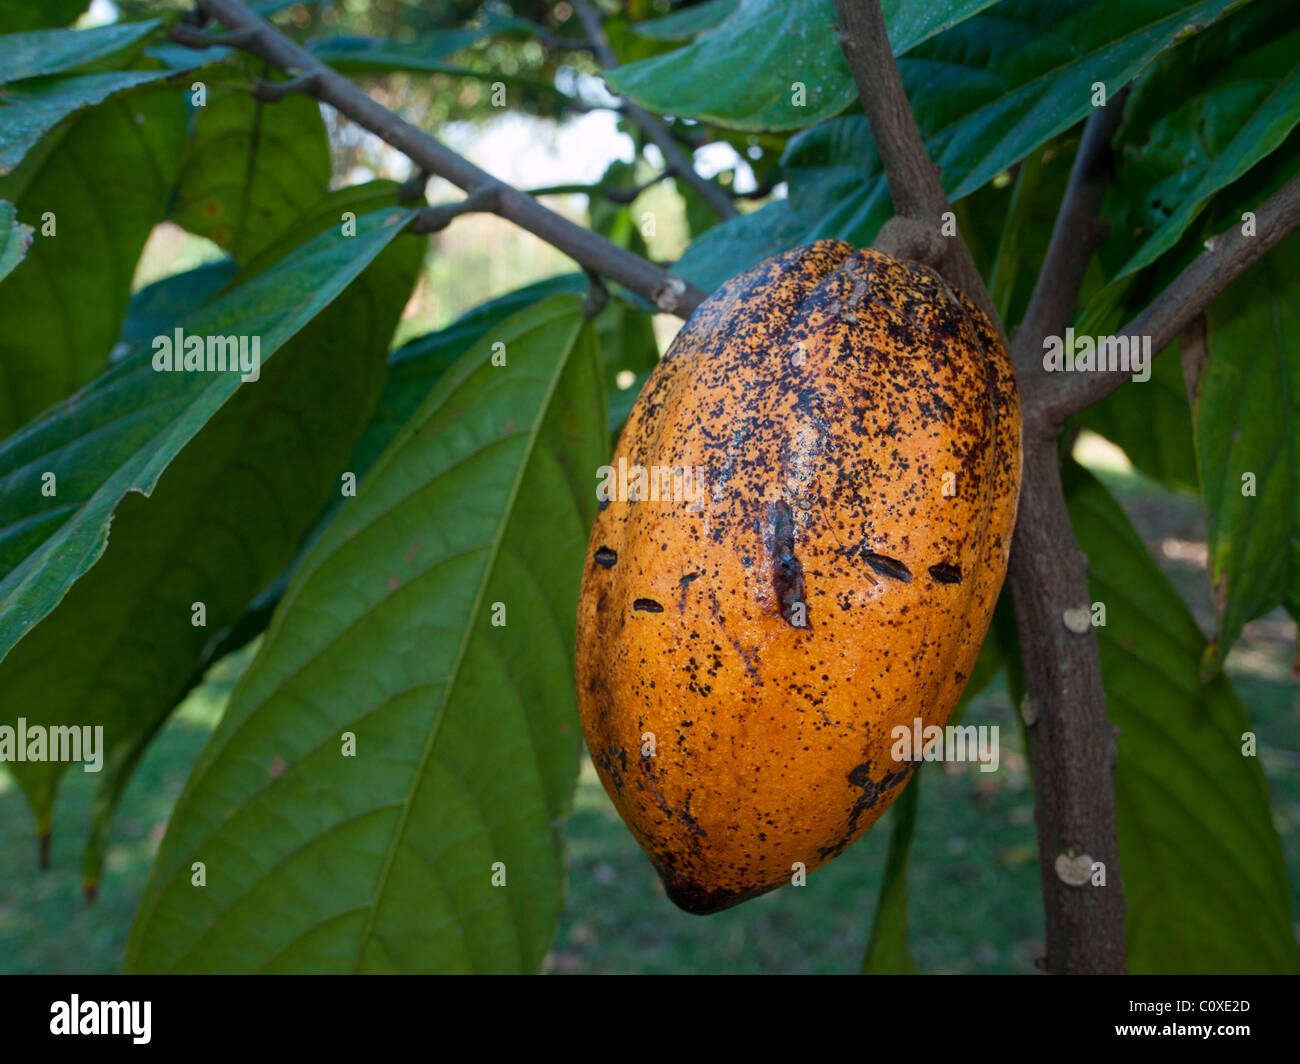 A COCOA or CHOCOLATE TREE (Theobroma cacao) Stock Photo